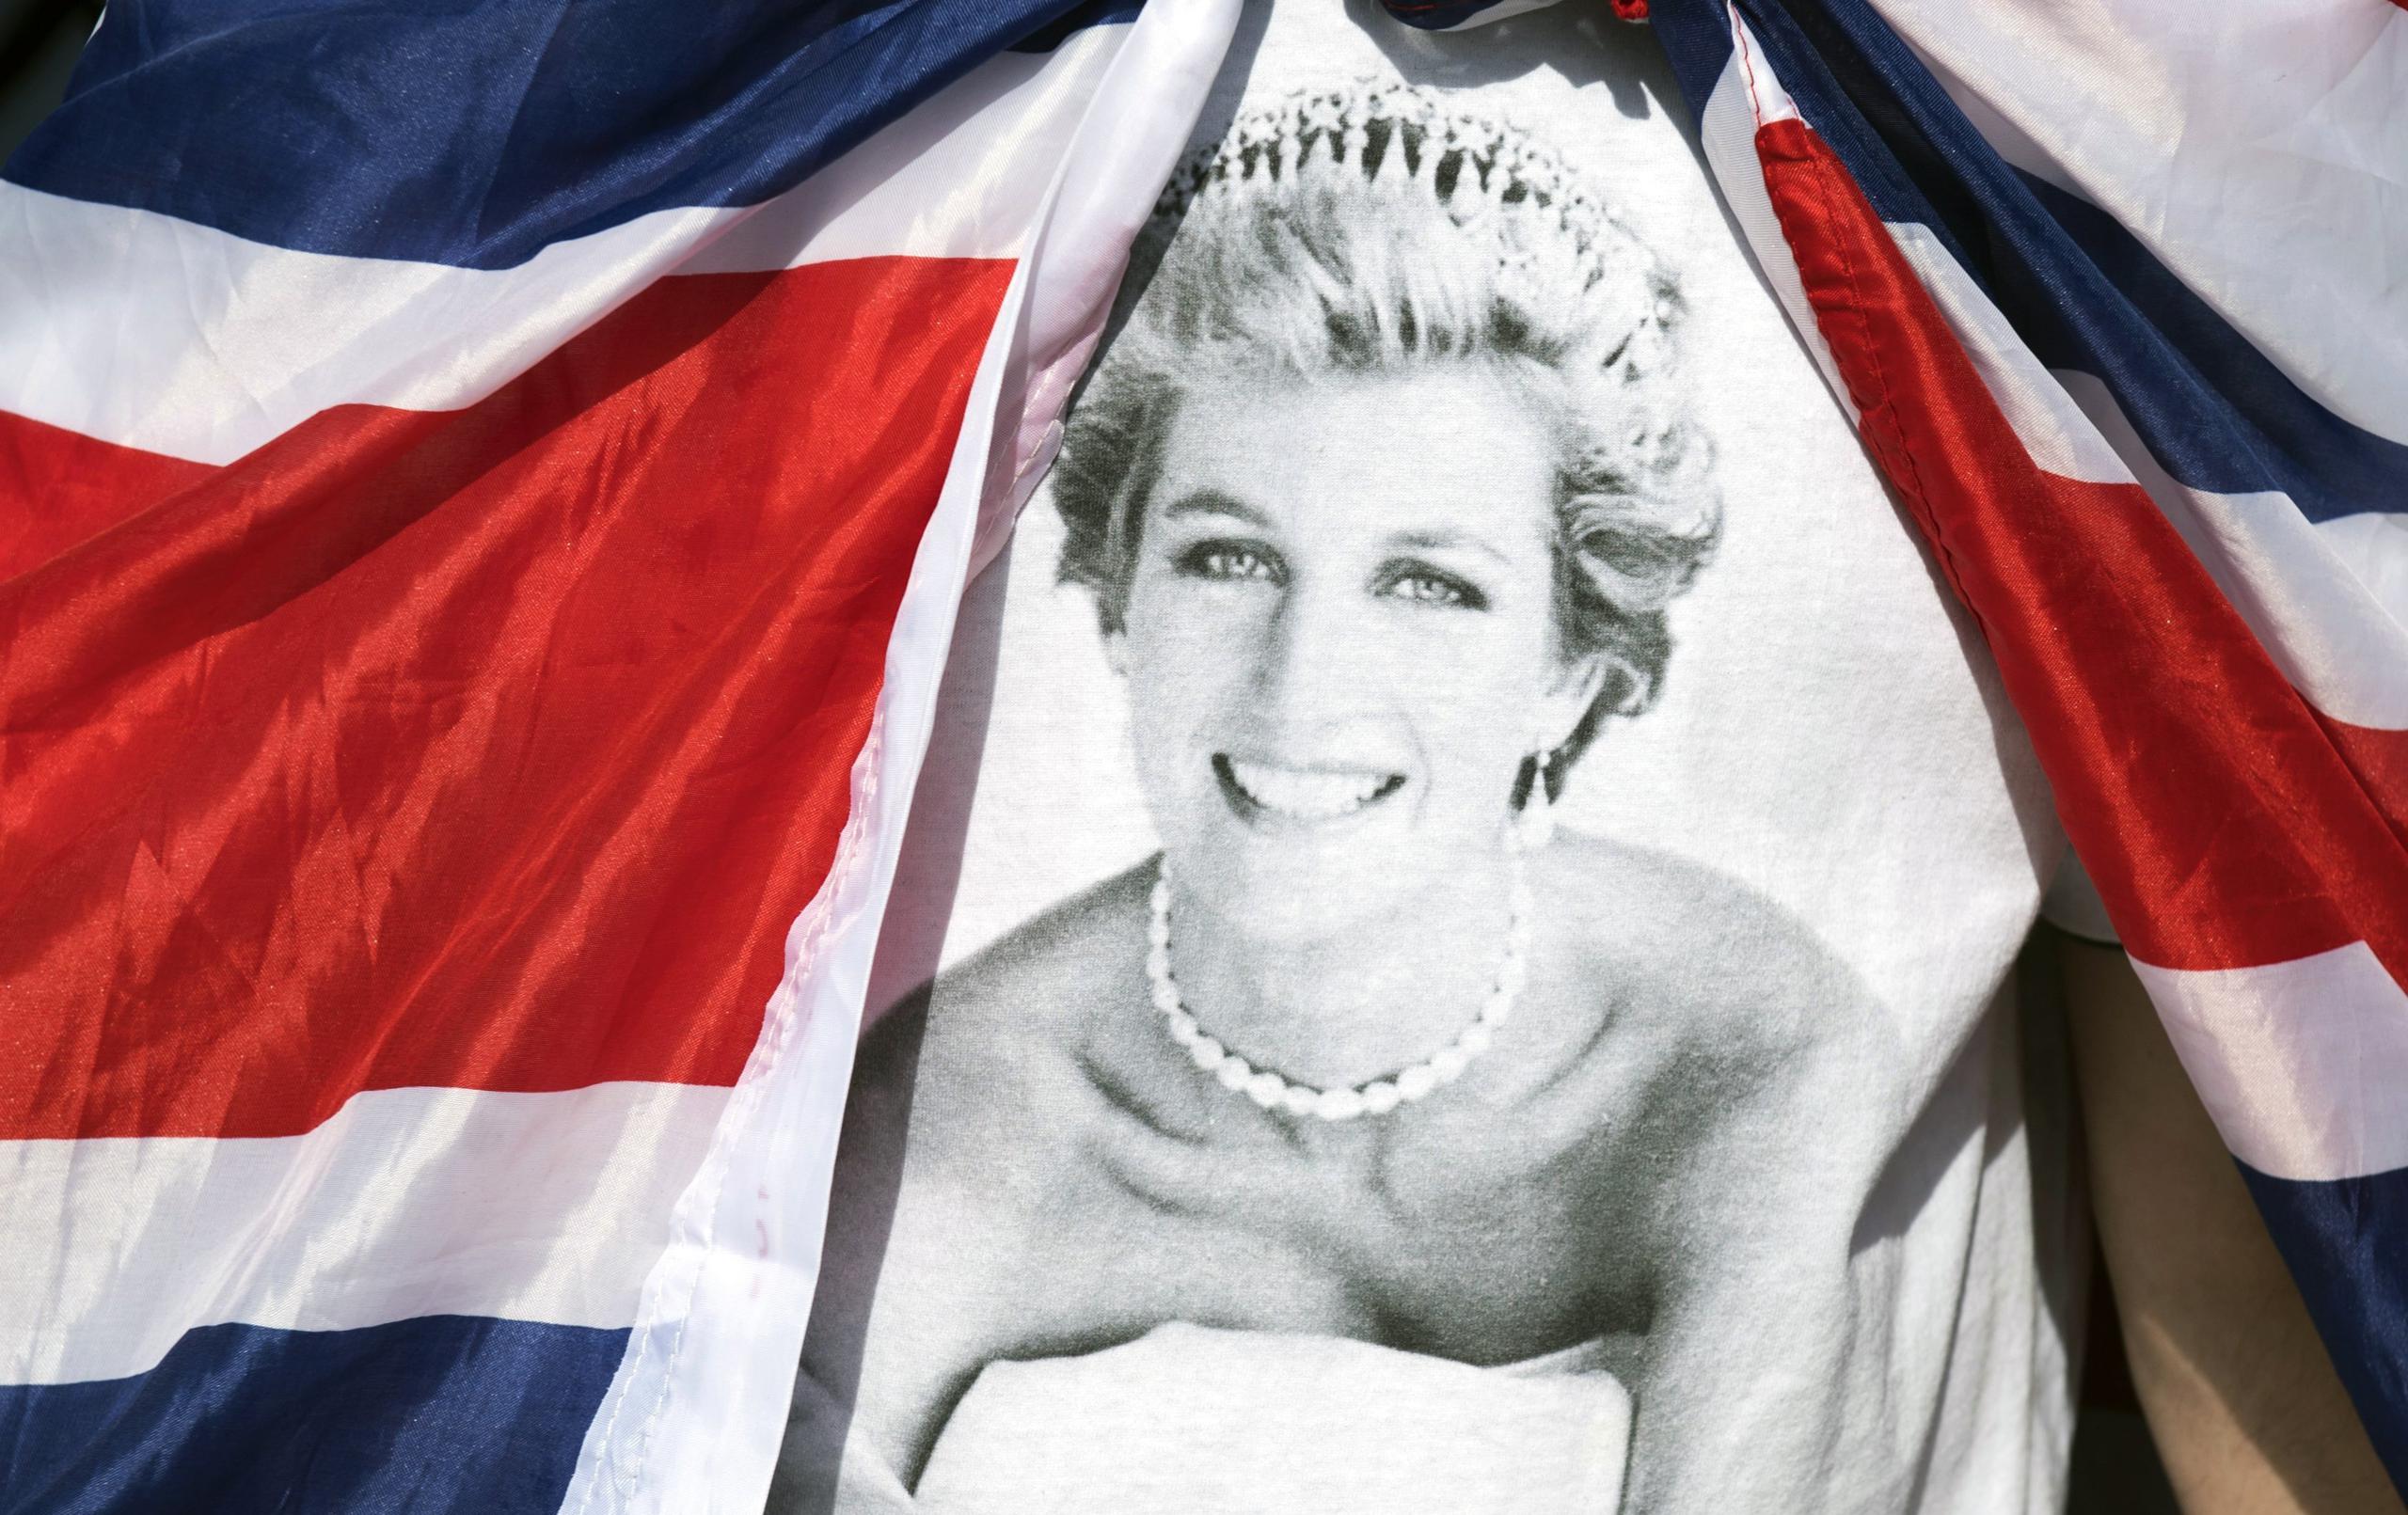 Sea como fuere, el documental sobre Diana tiene enganchados a millones de británicos estos días, lo que demuestra que la princesa sigue tan vigente ahora como hace 25 años, al igual, por desgracia, que las teorías conspirativas.